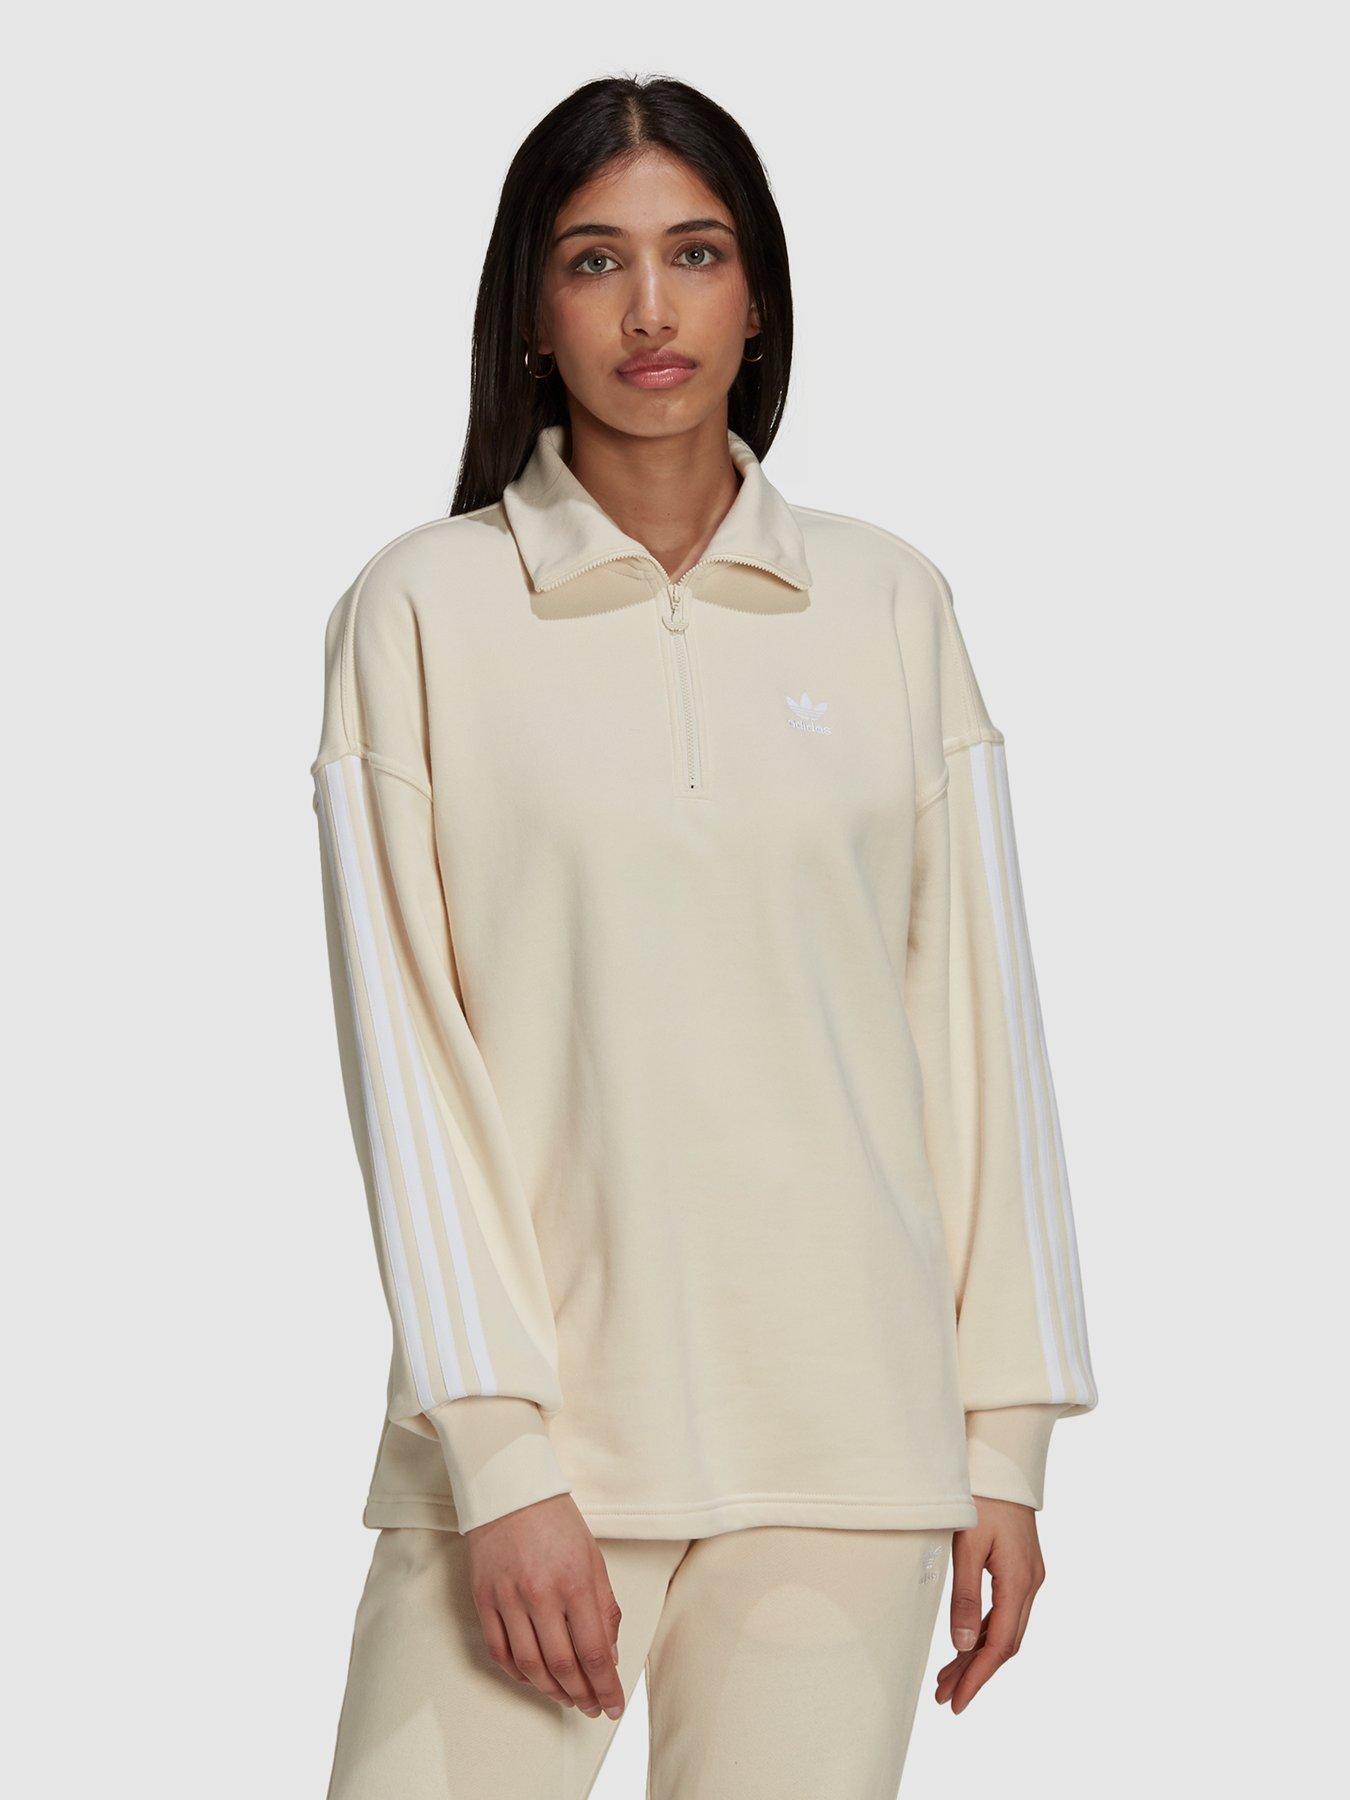  3 Stripes Half Zip Sweatshirt - Off White